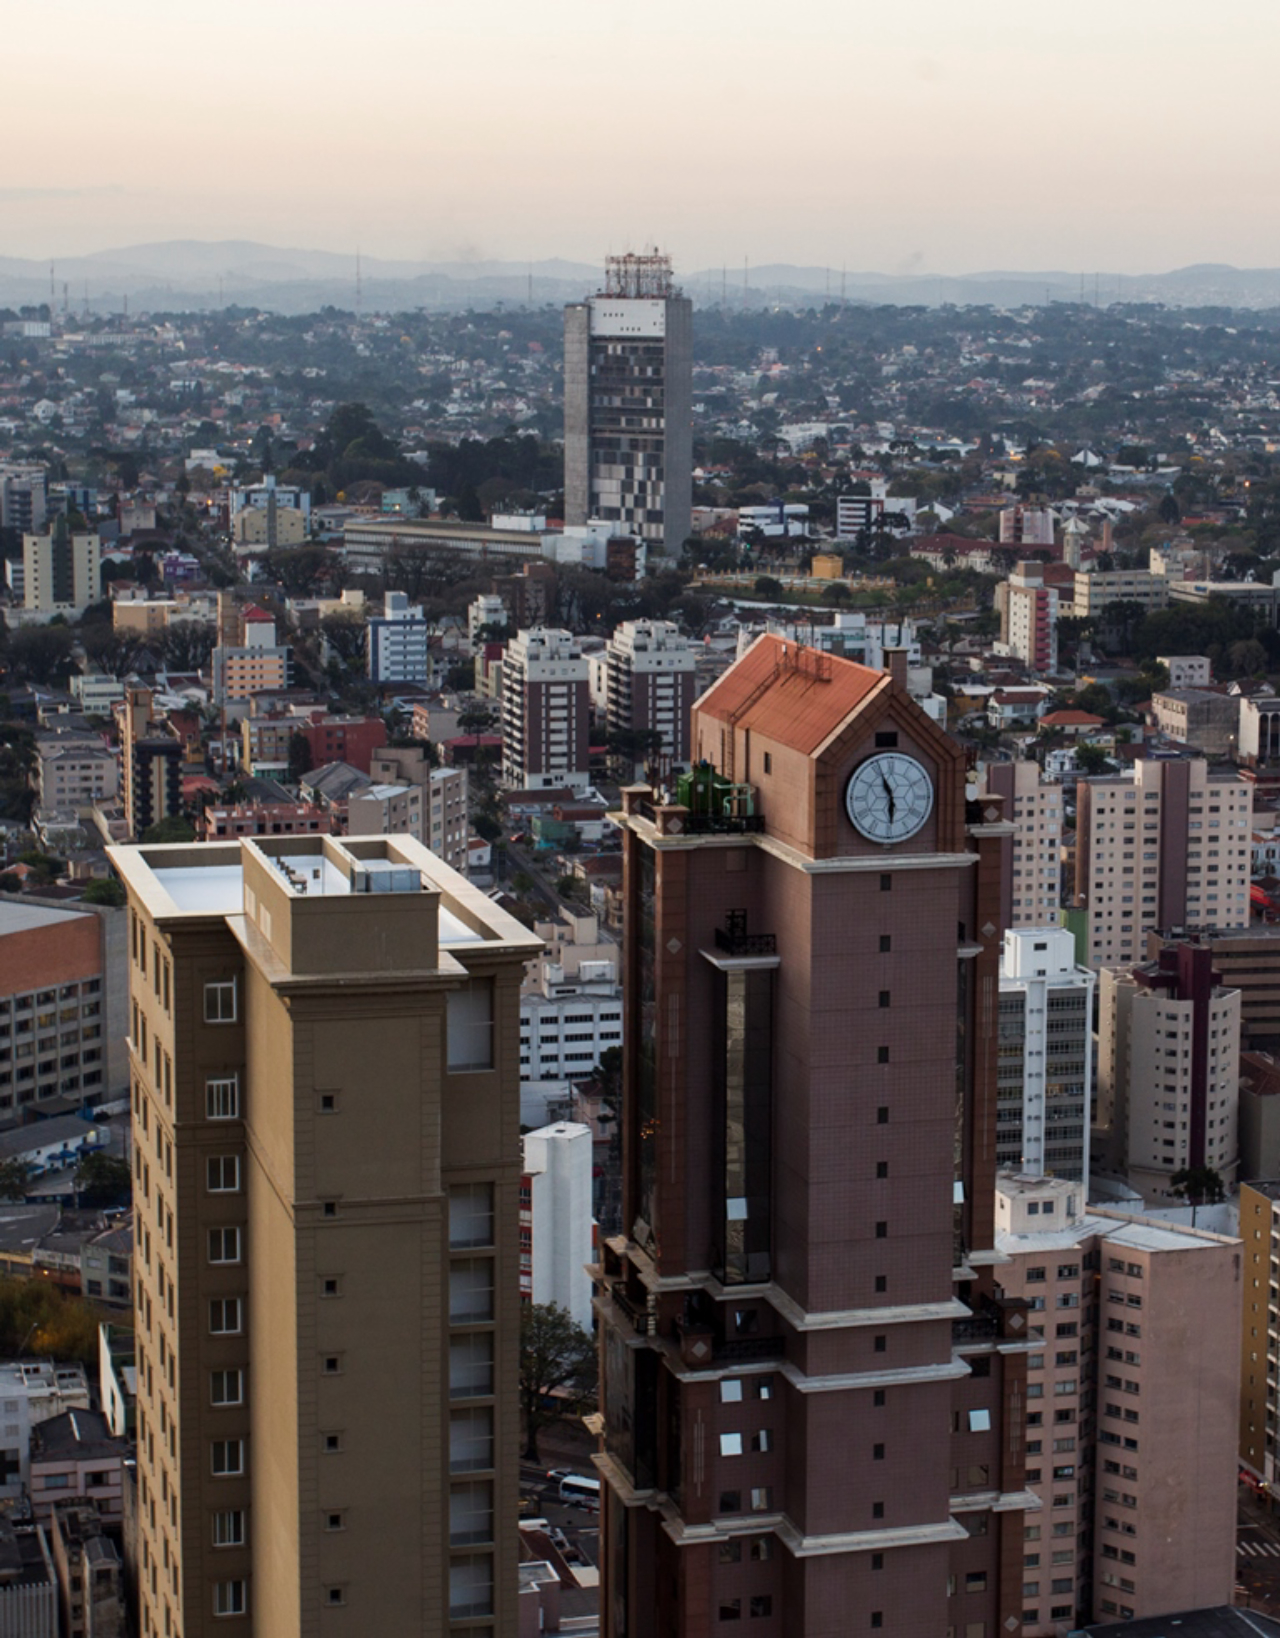 Vista do alto do Universe Life Space, prédio mais alto da cidade com 152 metros.<br>Foto: Daniel Castellano / Gazeta do Povo. 